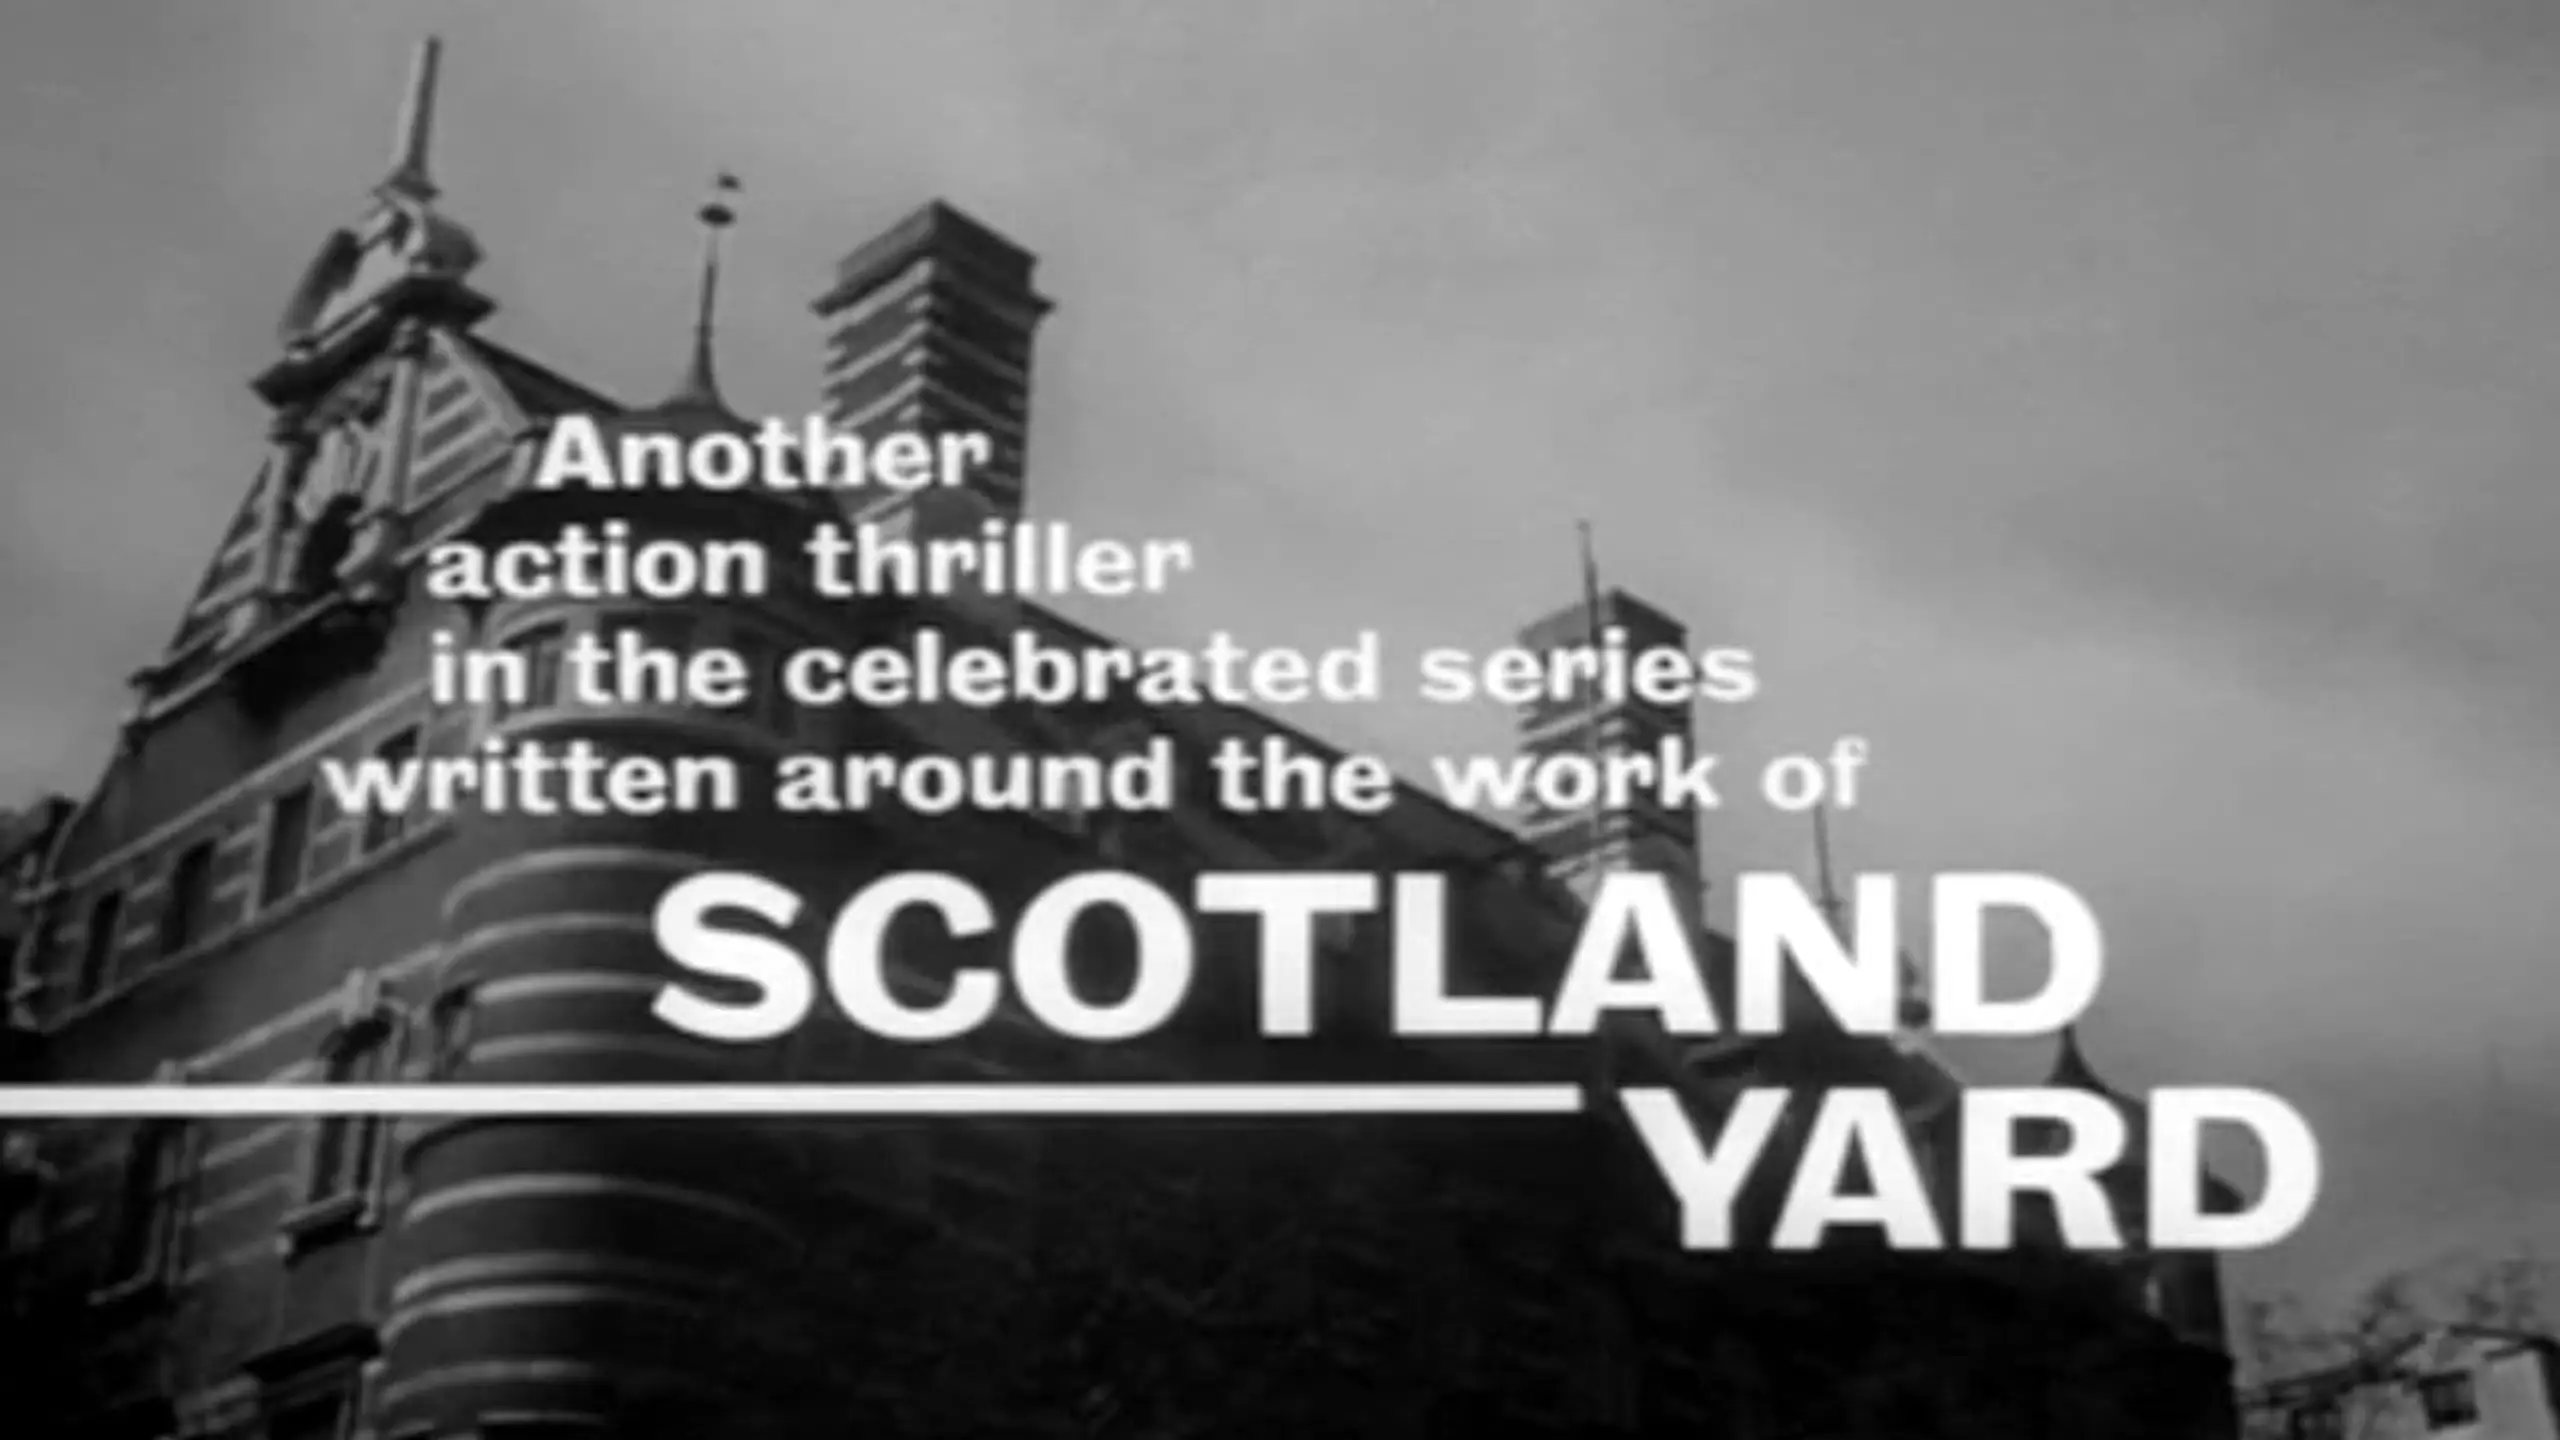 Scotland Yard klärt auf